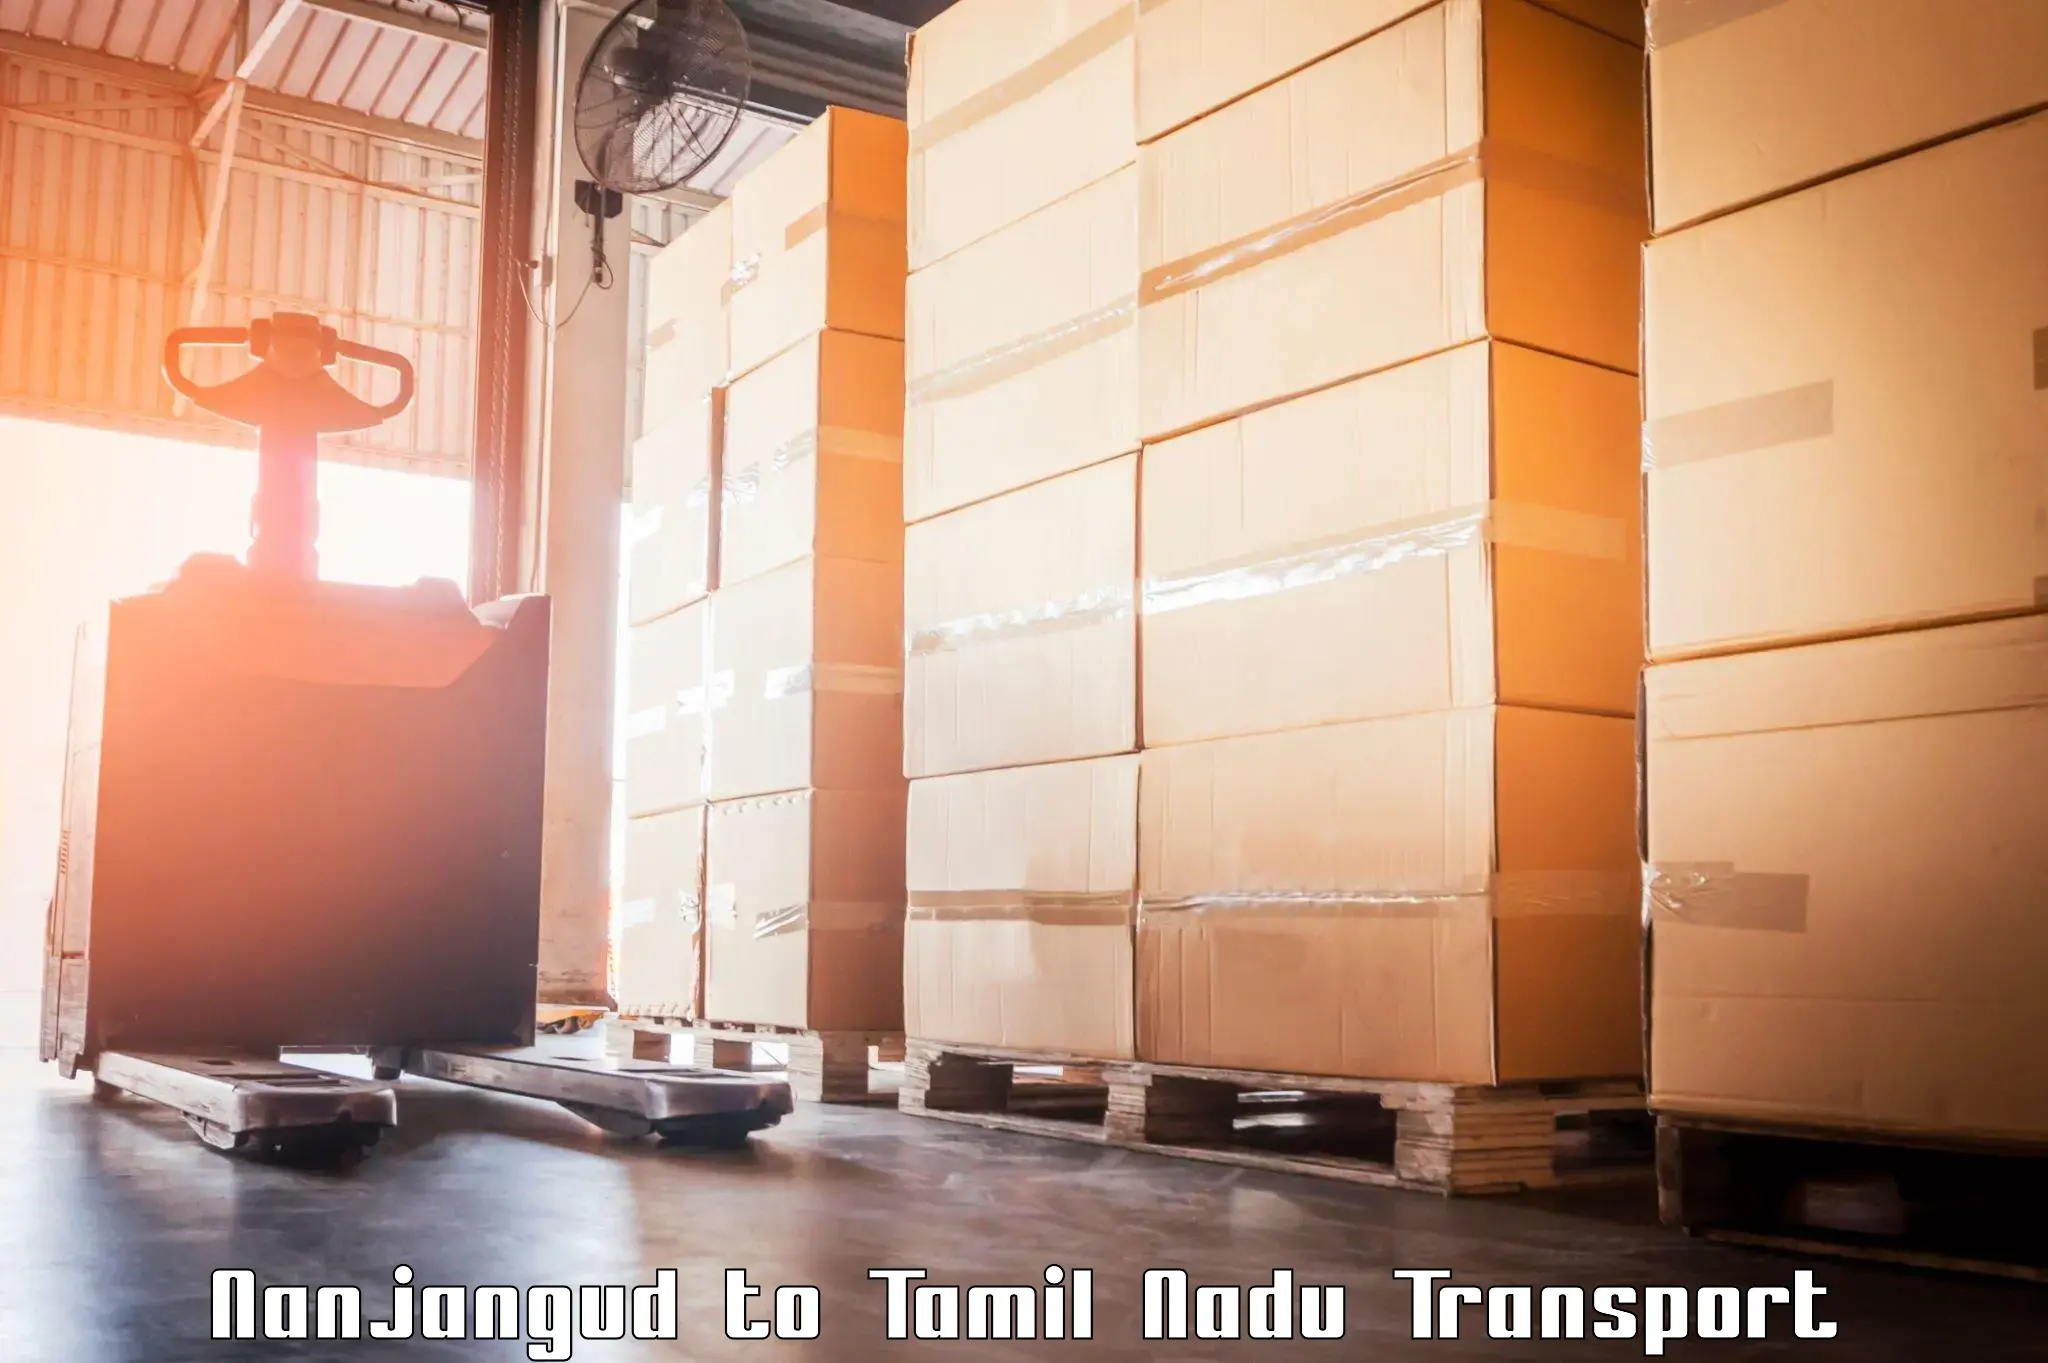 Online transport booking Nanjangud to Nilakottai